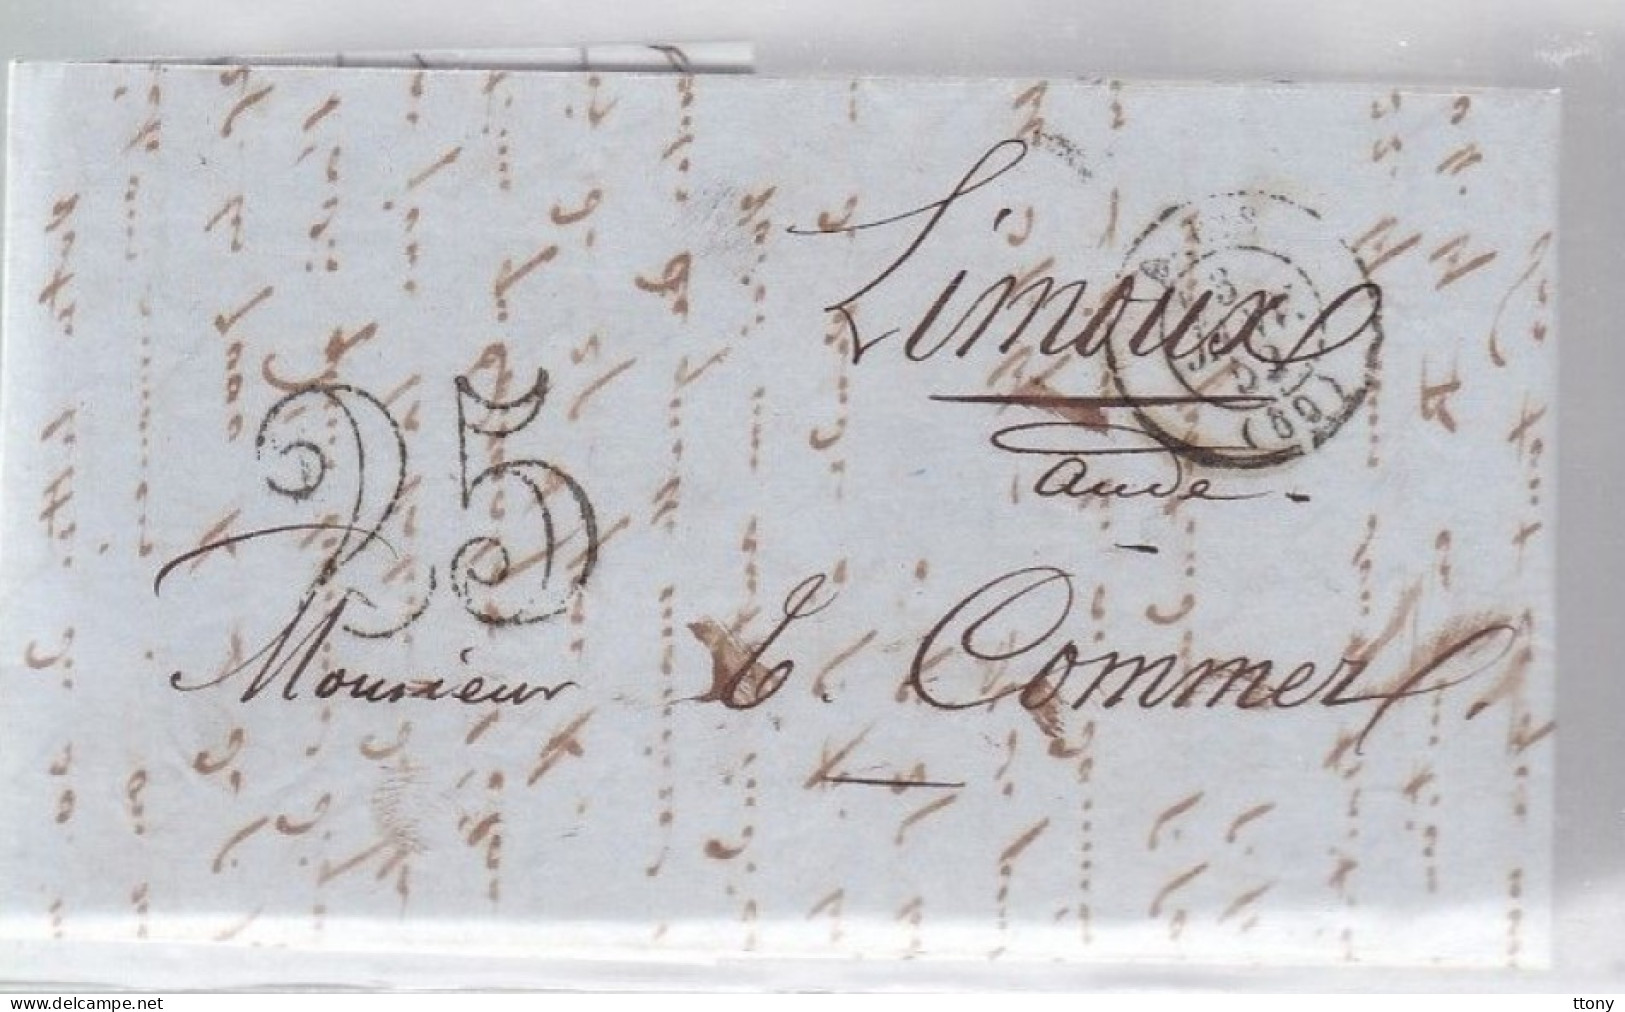 Lettre Dite Précurseurs  Sur Lettre  Pour Limoux 1852  Taxe 25 - Unclassified